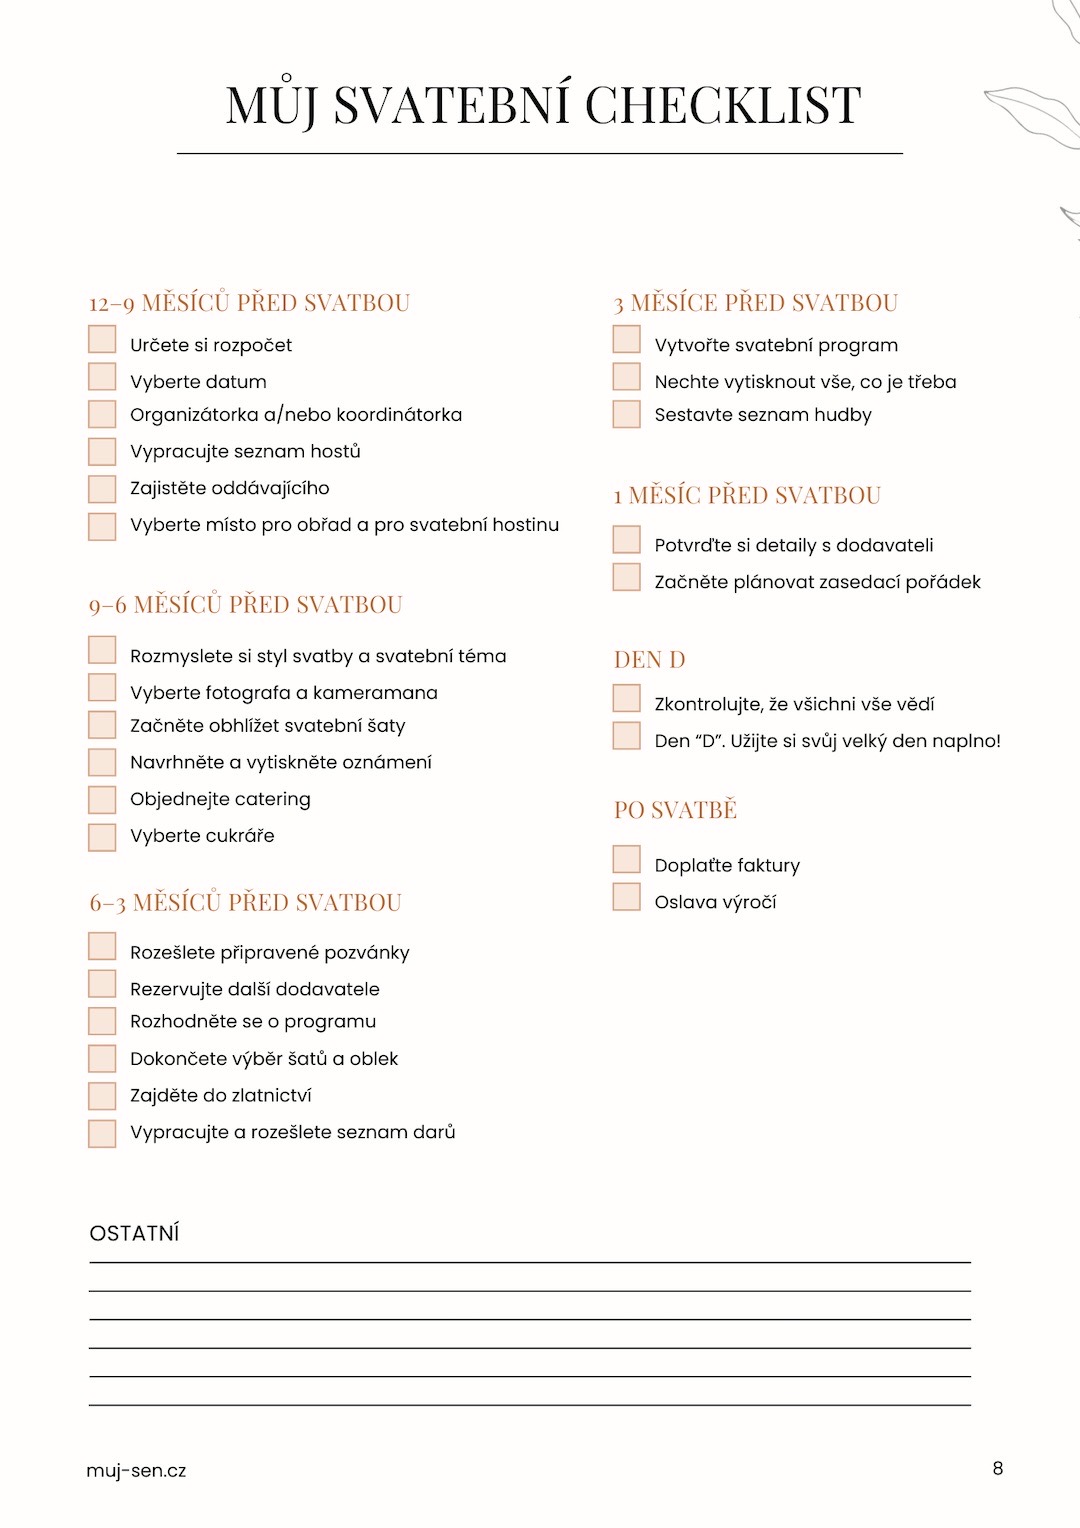 Checklist s jednotlivými body